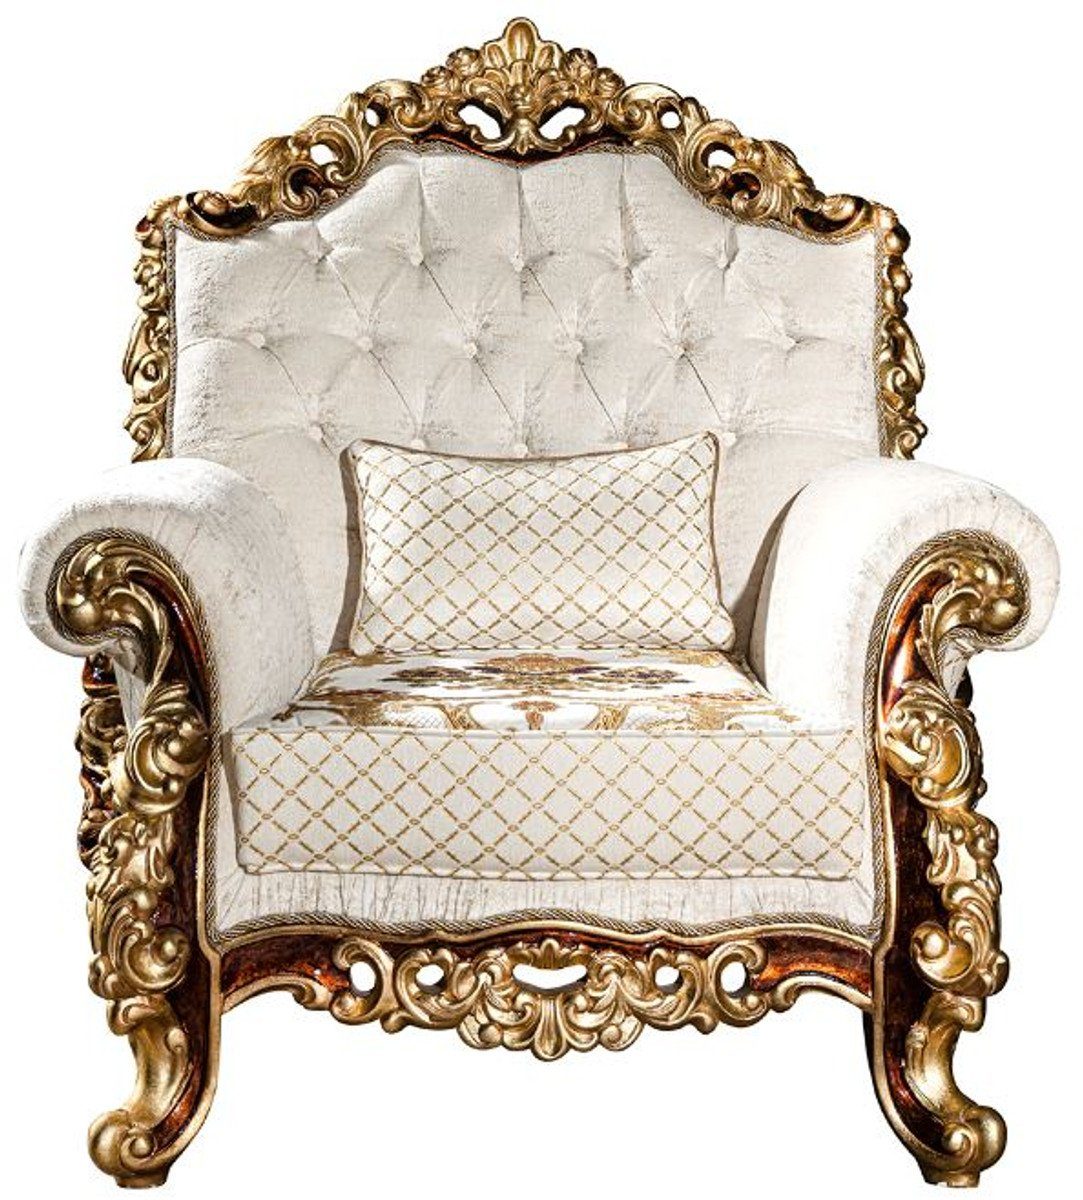 Casa Padrino Sessel Luxus Barock Sessel Weiß / Gold / Braun / Gold 78 x 75 x H. 120 cm - Prunkvoller Wohnzimmer Sessel mit dekorativem Kissen - Barock Möbel